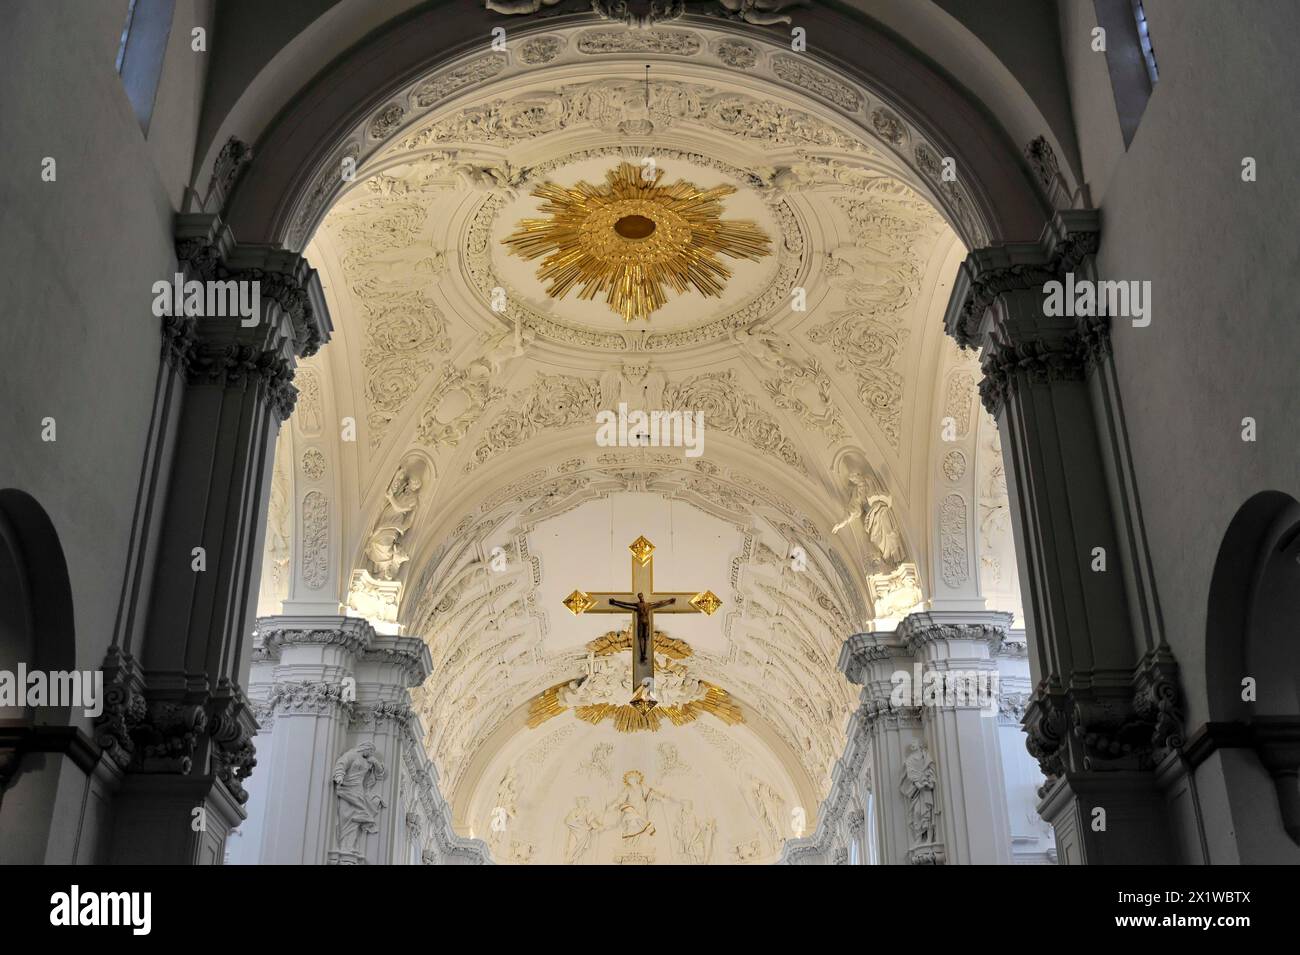 St. Kilianskathedrale in Würzburg, Würzburger Dom, glänzender Goldaltar im barocken Kircheninnenraum mit Kruzifix und verzierter Decke Stockfoto